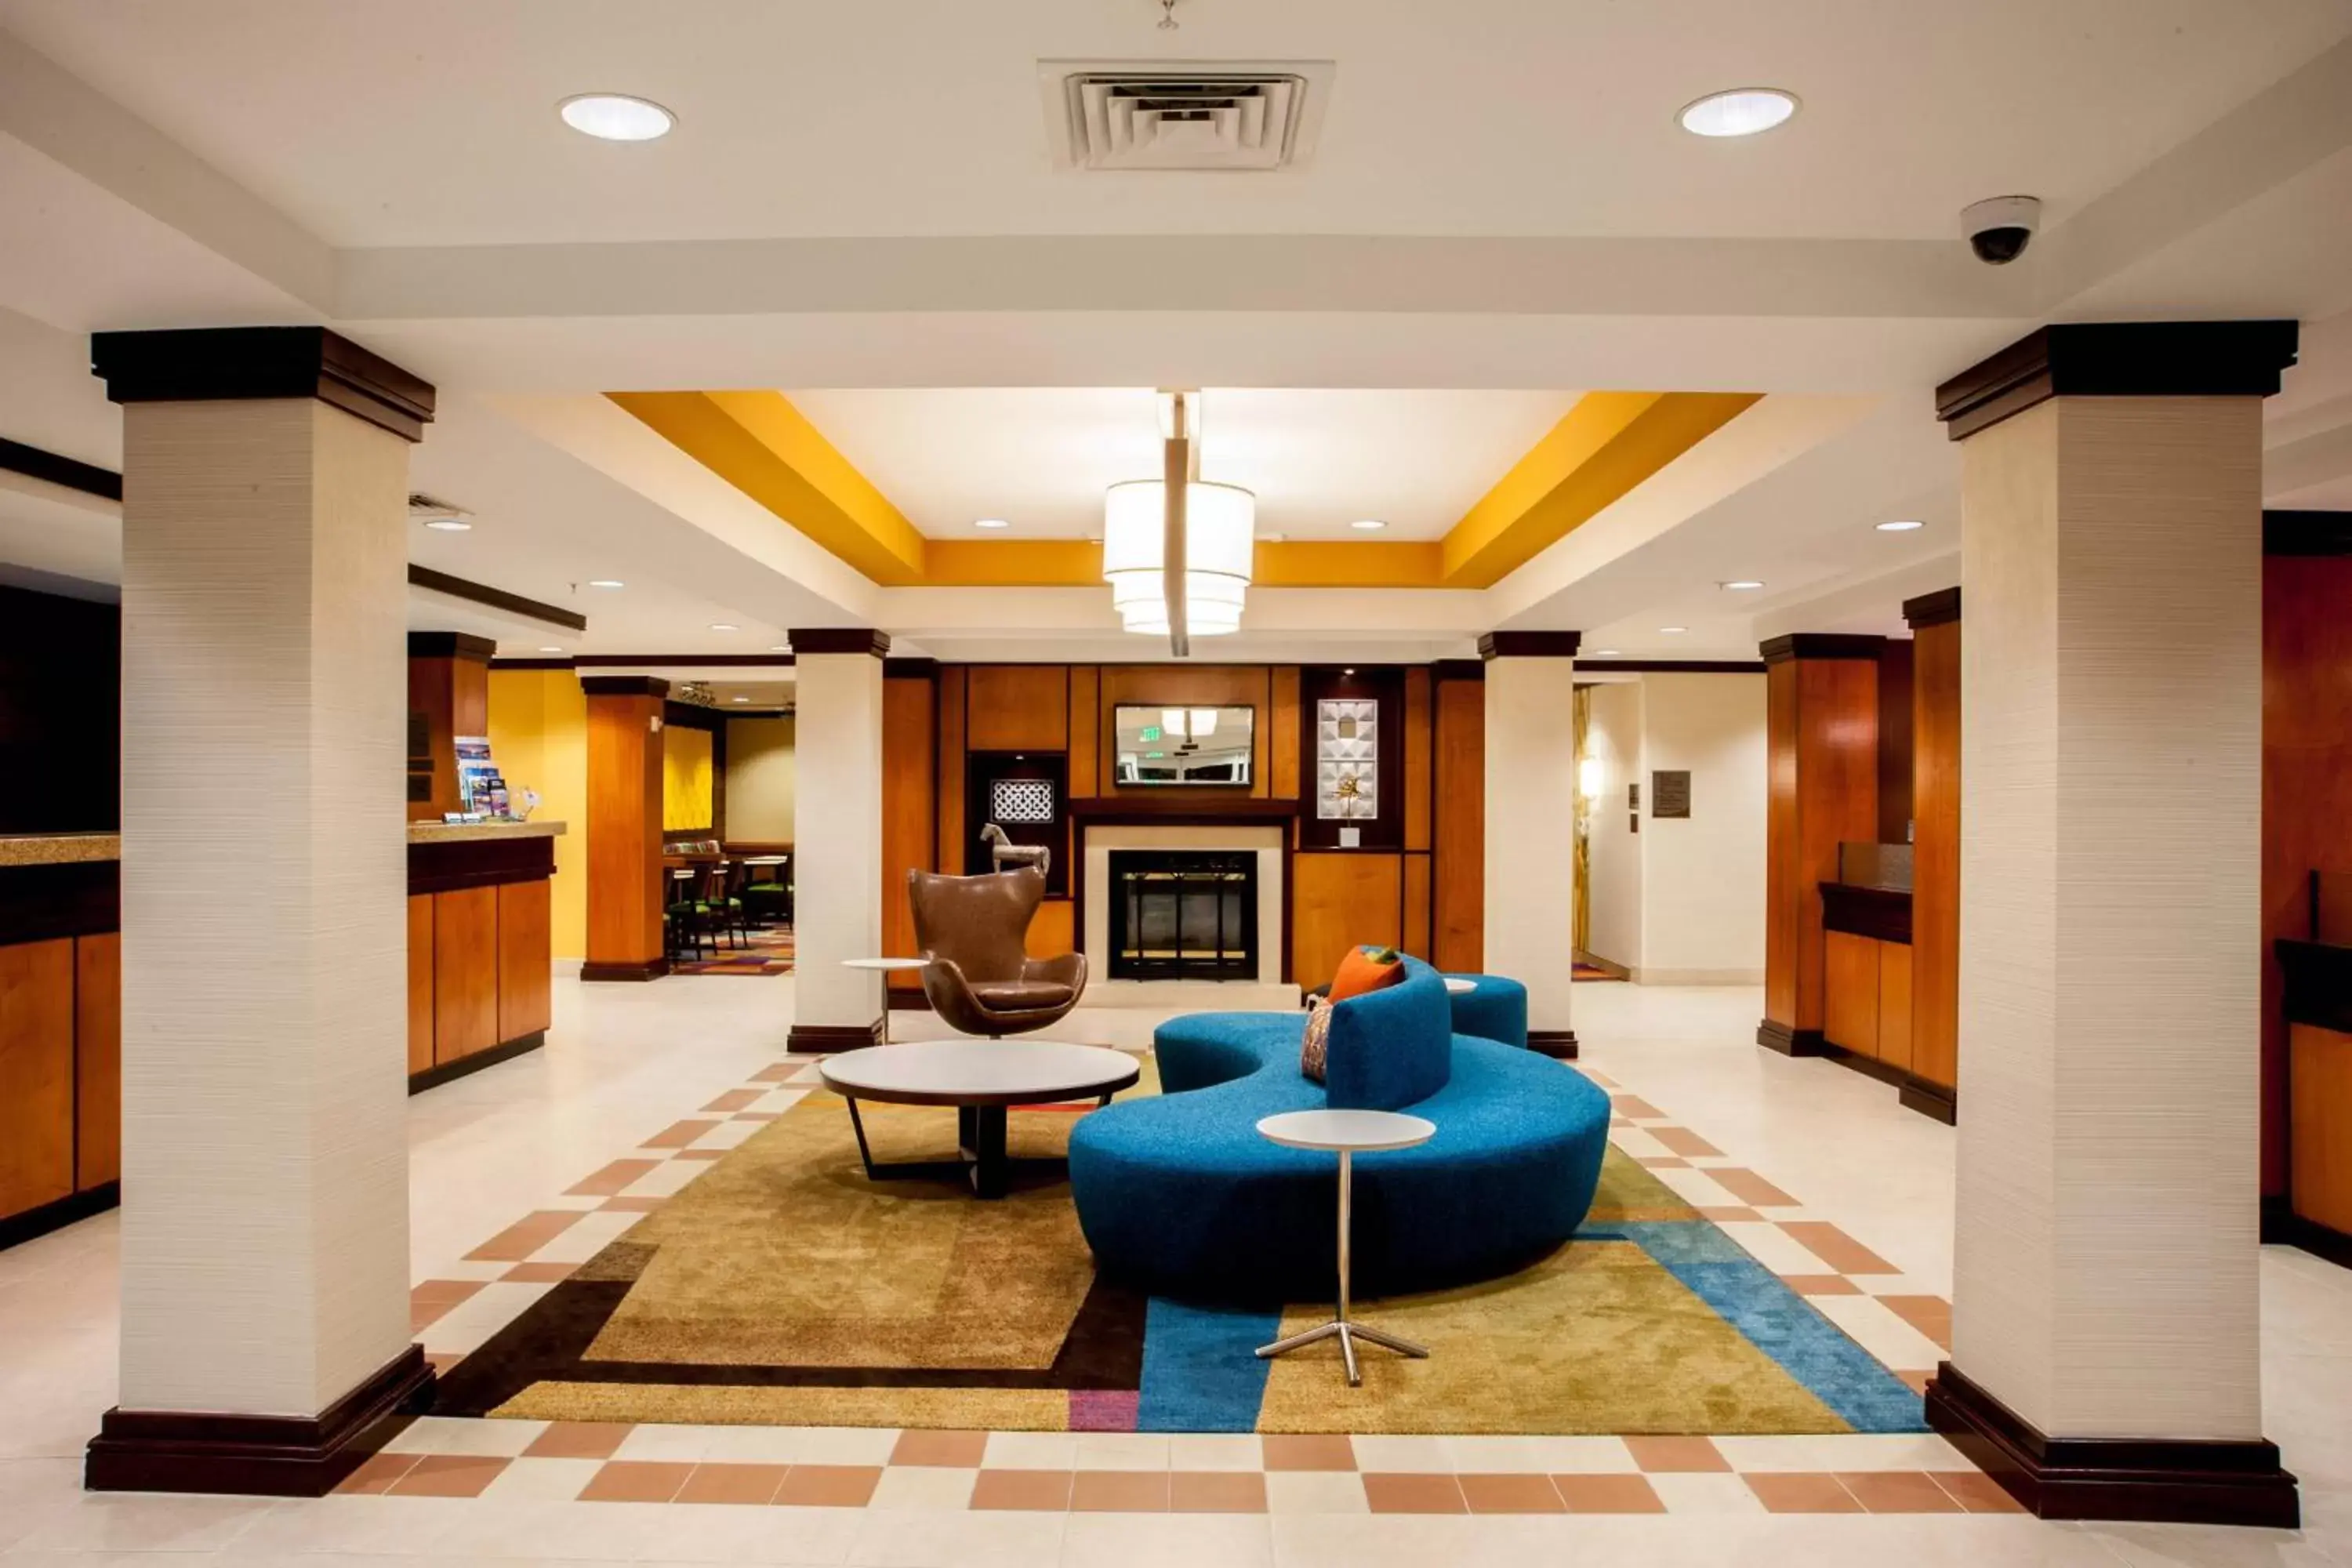 Lobby or reception, Lobby/Reception in Fairfield Inn & Suites Clovis